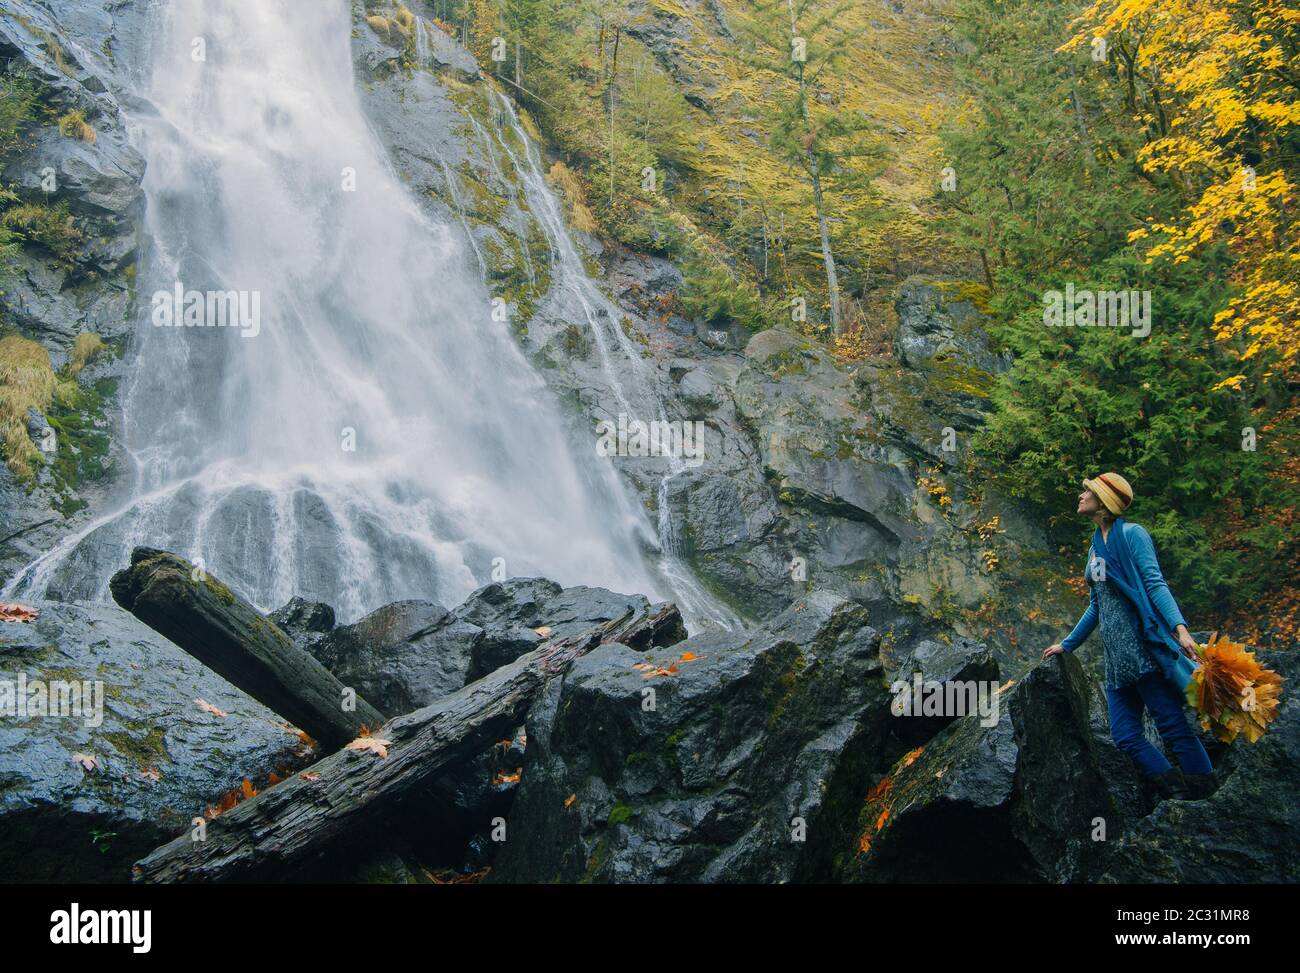 Vista della donna sulla roccia con bouquet di foglie di caduta, Rocky Brook Falls, Brinnon, Washington, USA Foto Stock